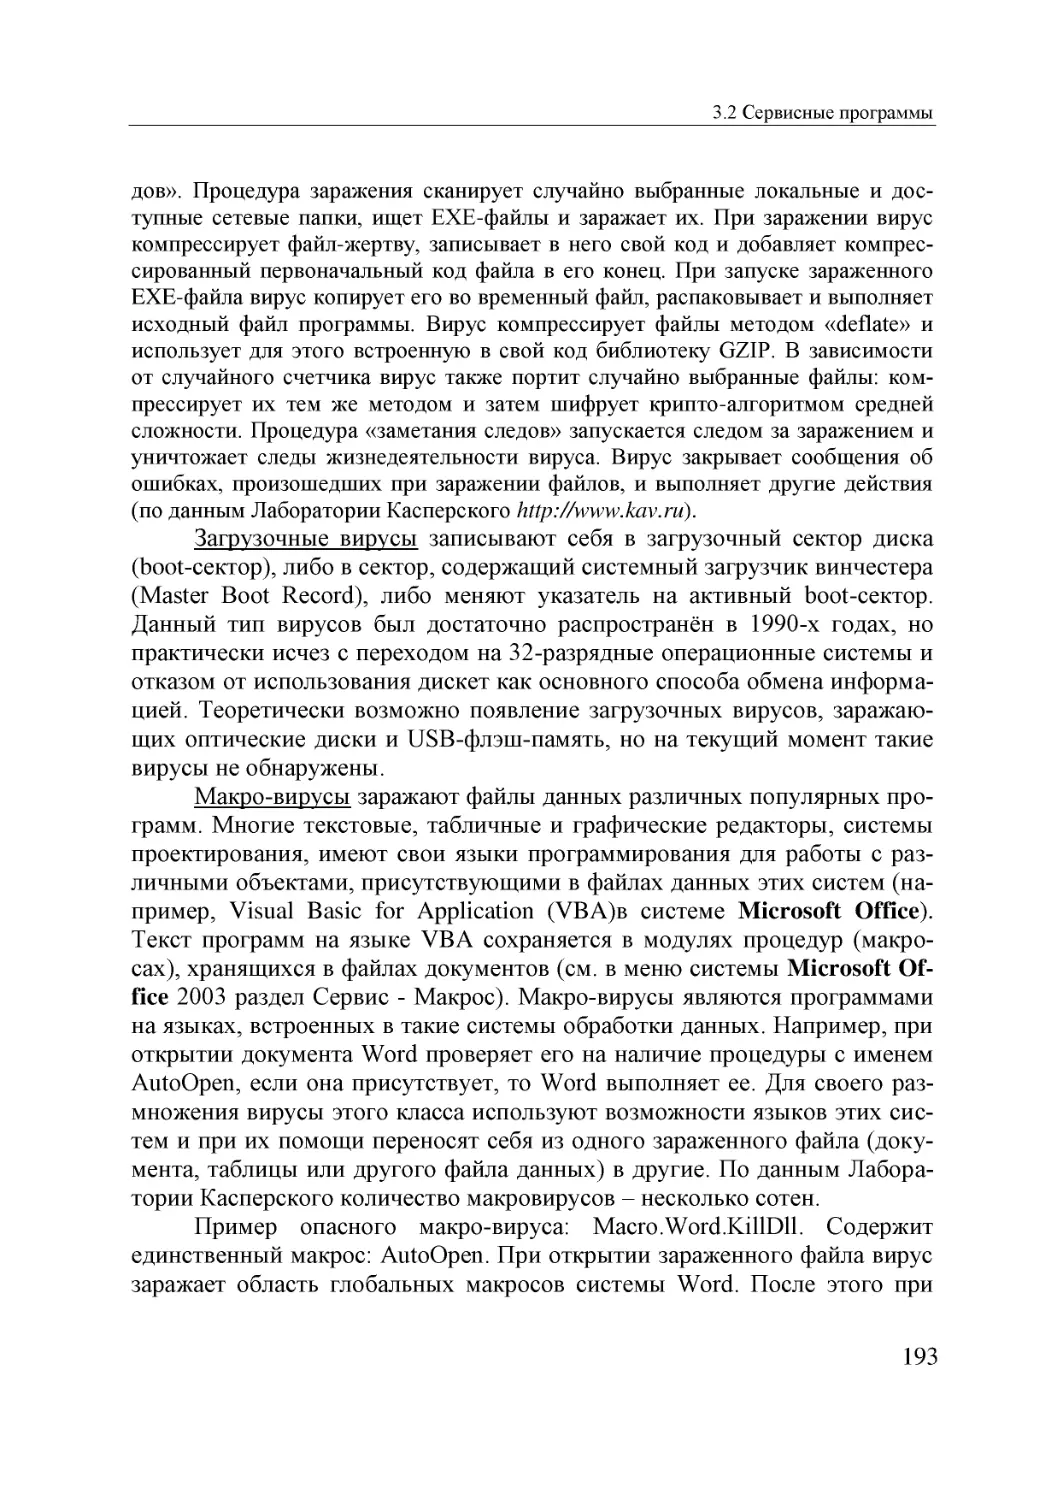 Informatika_Uchebnik_dlya_vuzov_2010 193